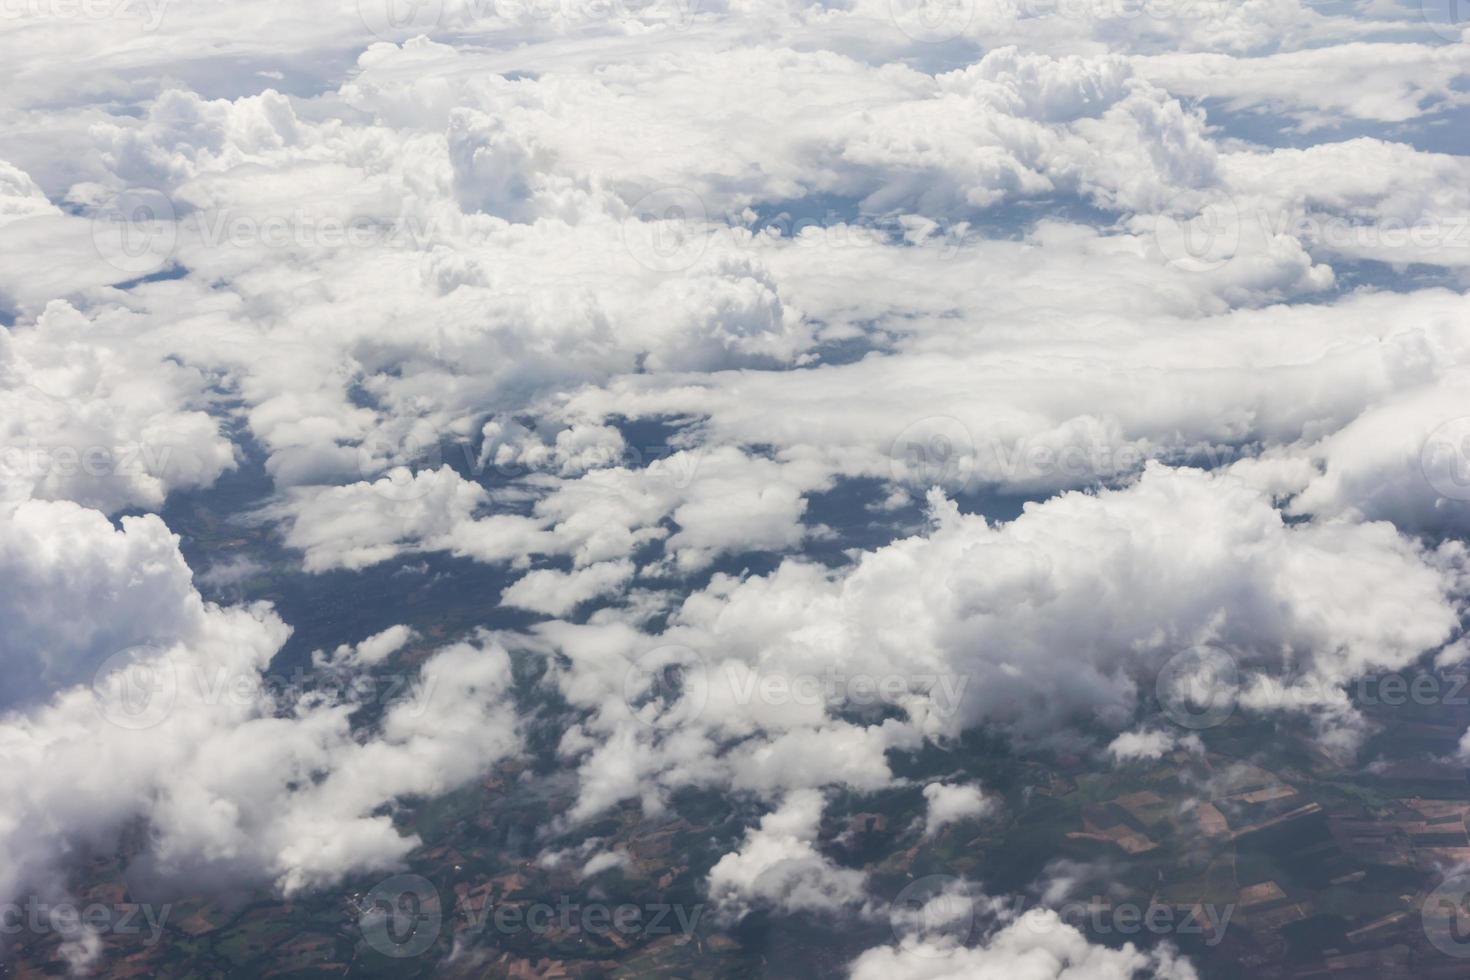 cielo azul con nubes en el avion foto